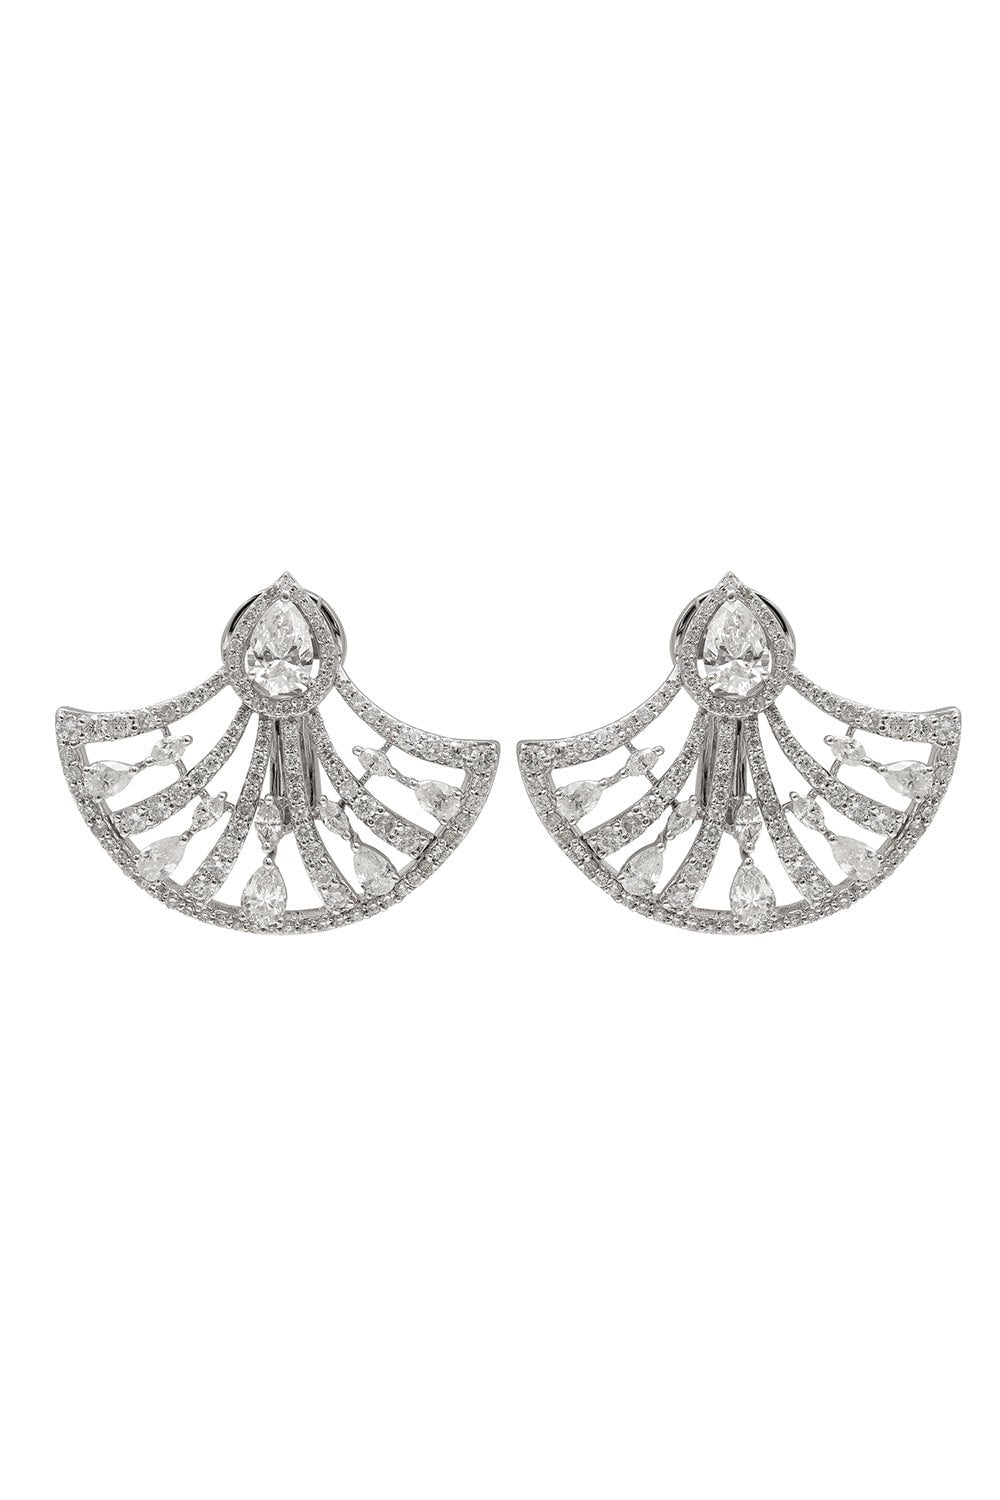 RUCHI-Diamond Fan Earrings-WHITE GOLD